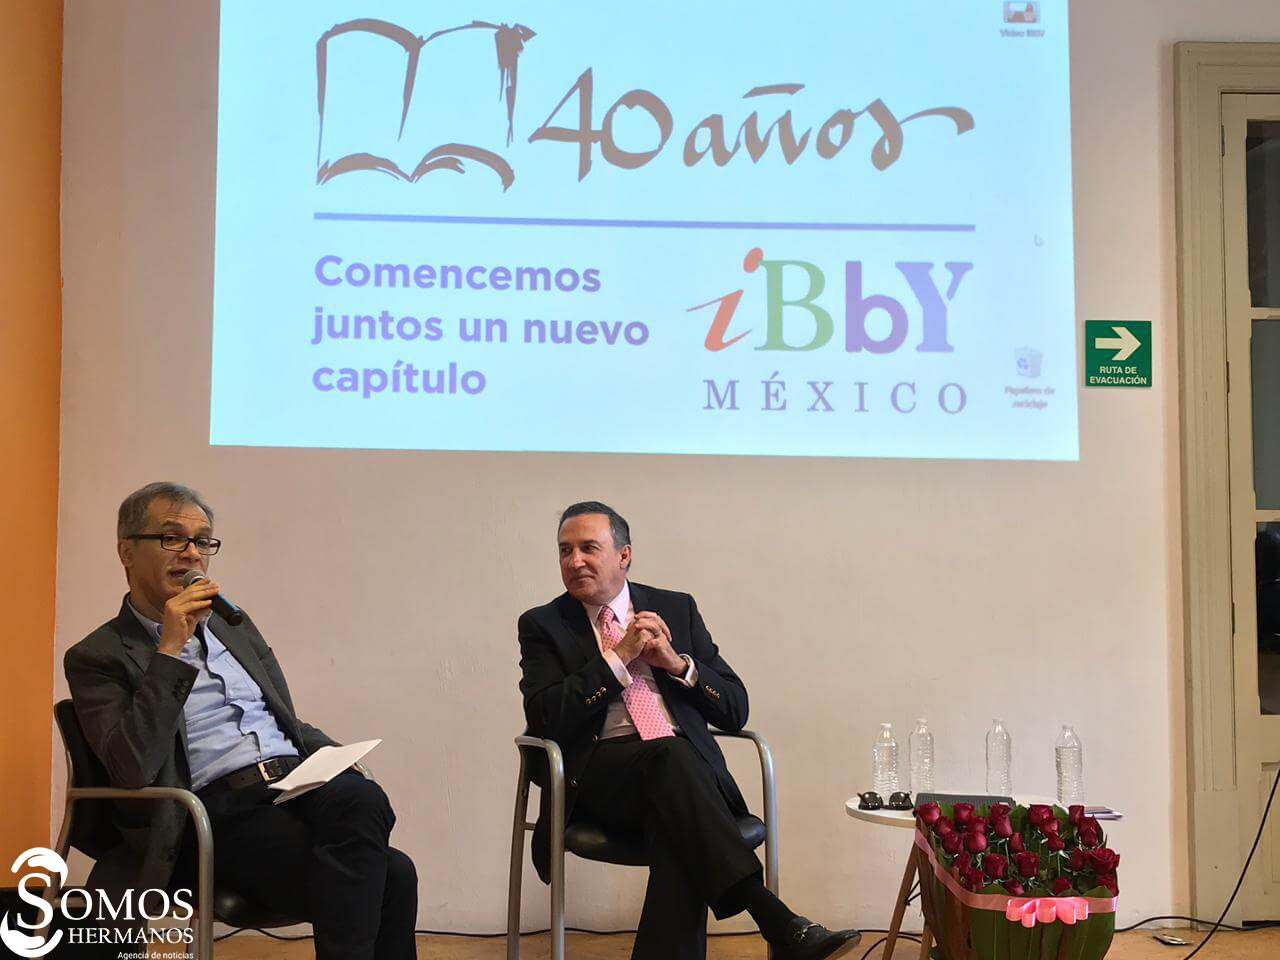 IBBY México, 40 años de promover la lectura